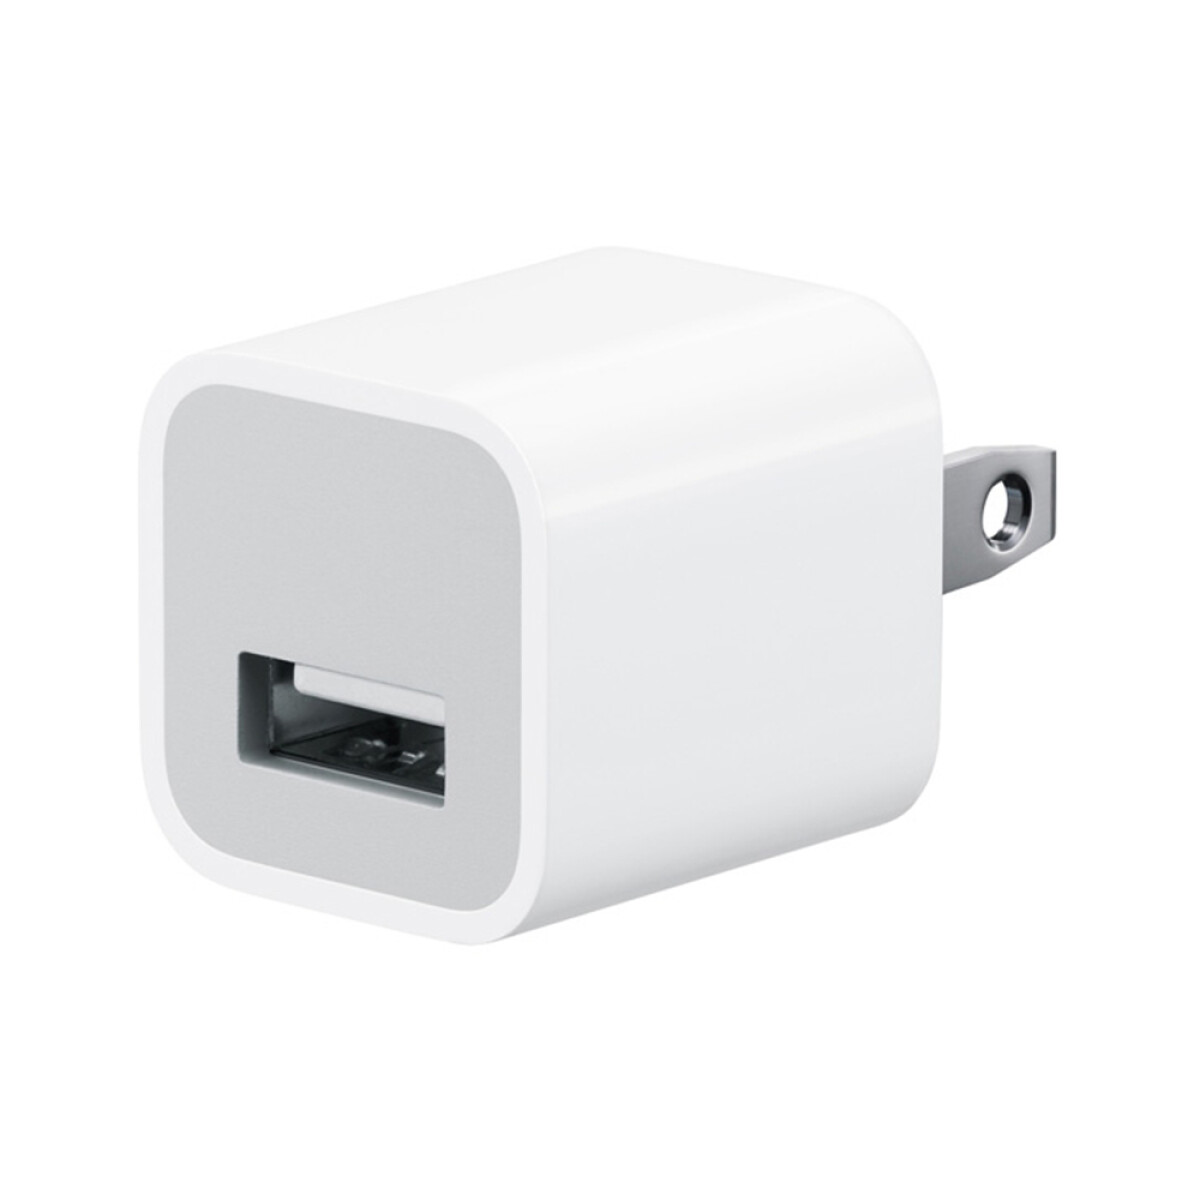 Cargador original apple power adapter usb 5w - White 